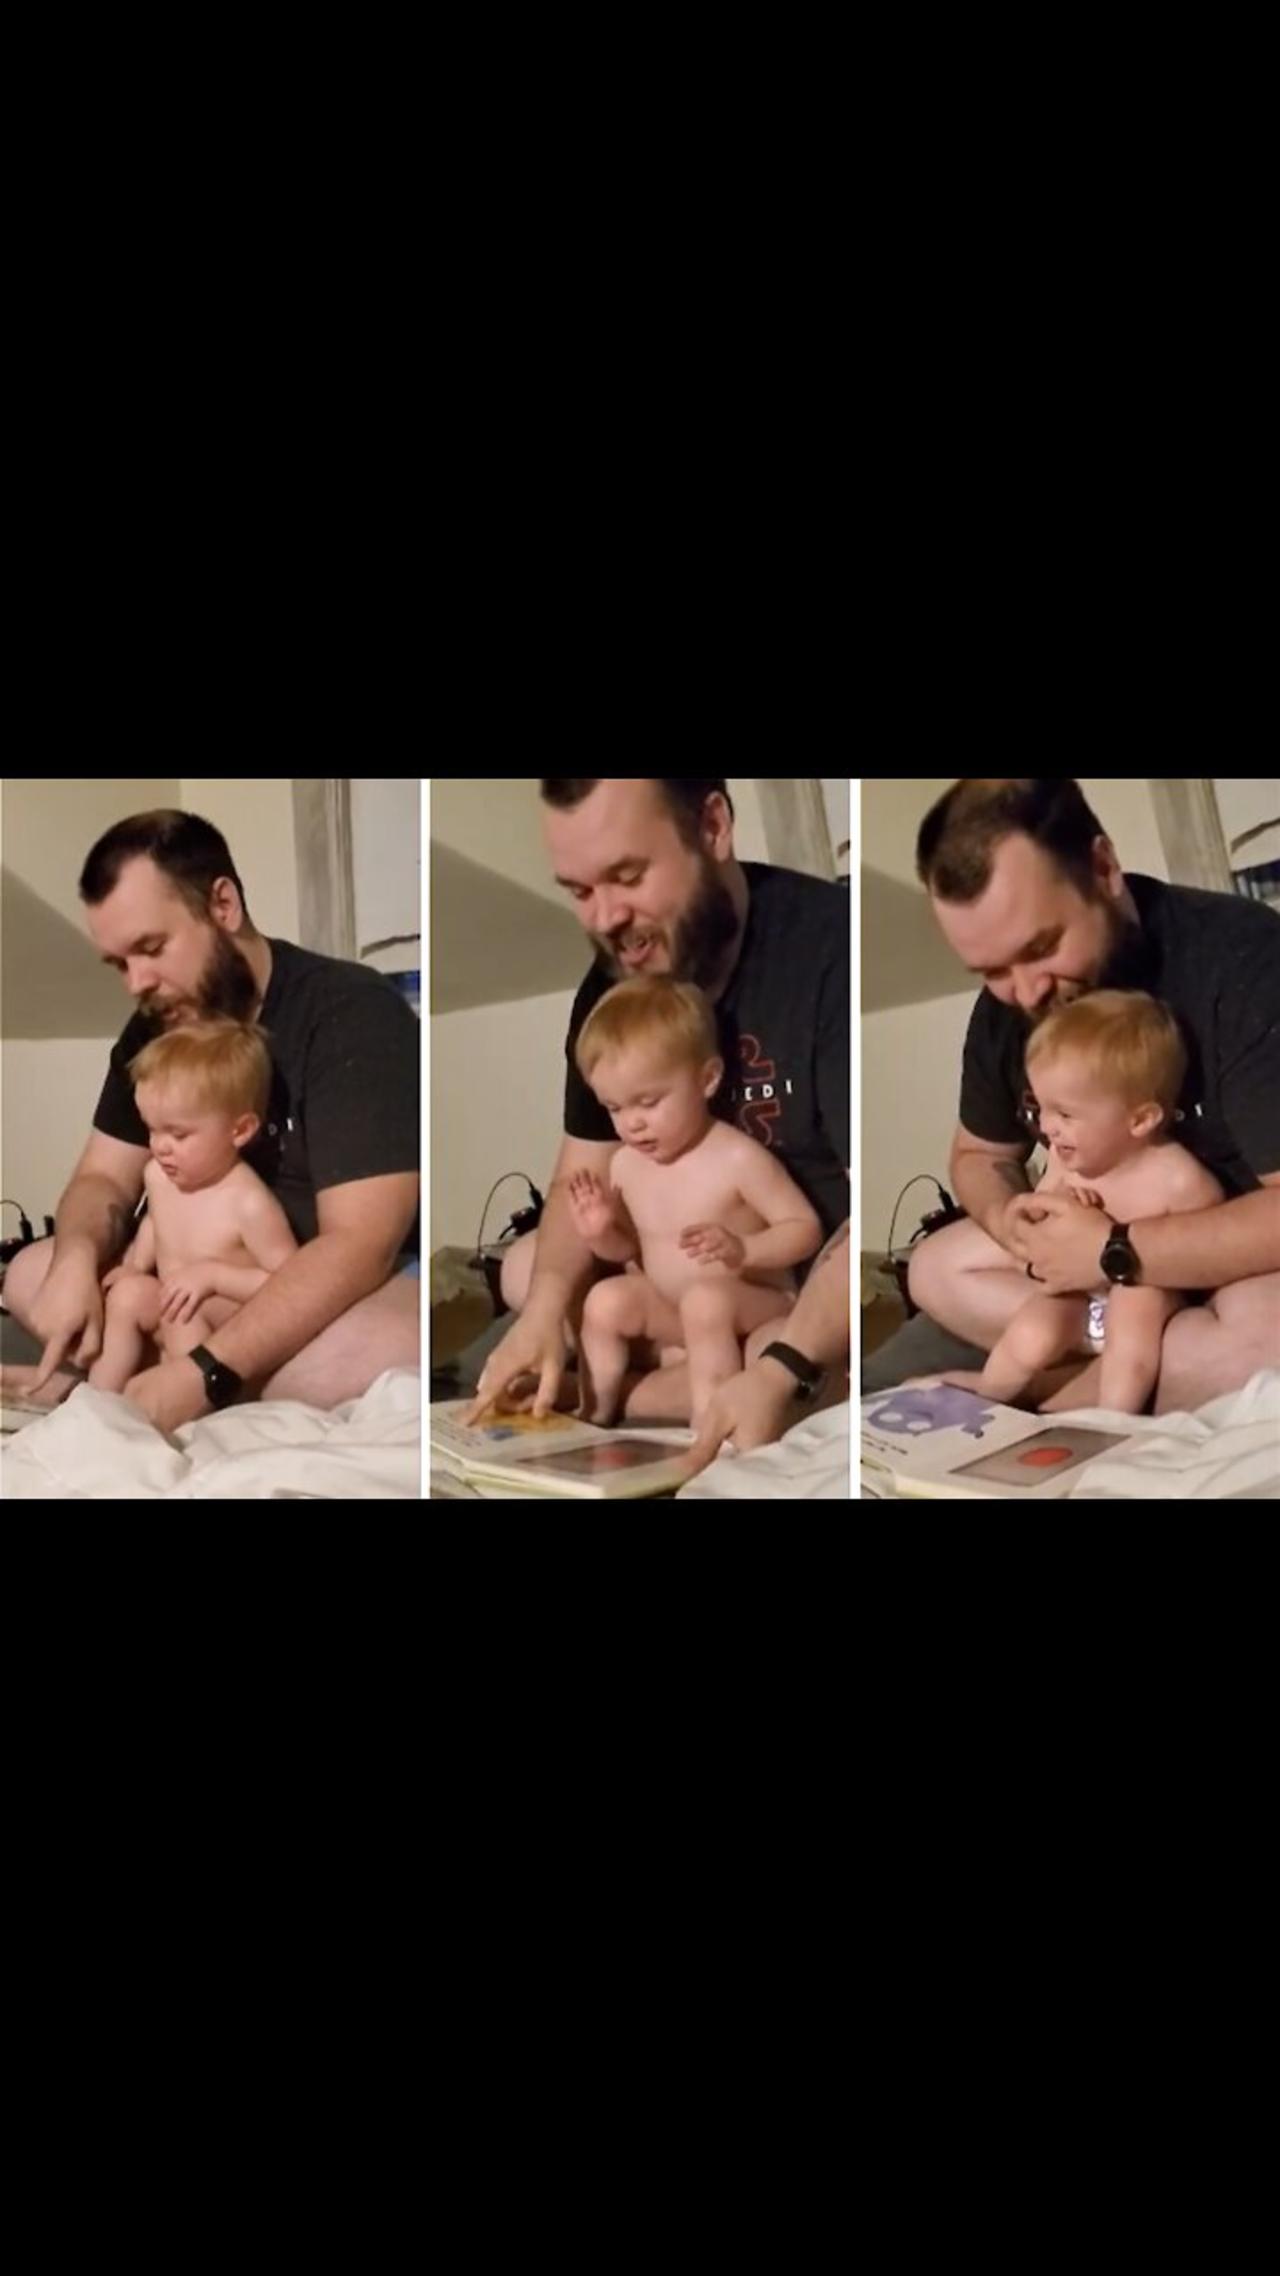 Dad & son have a blast reading creative children's book